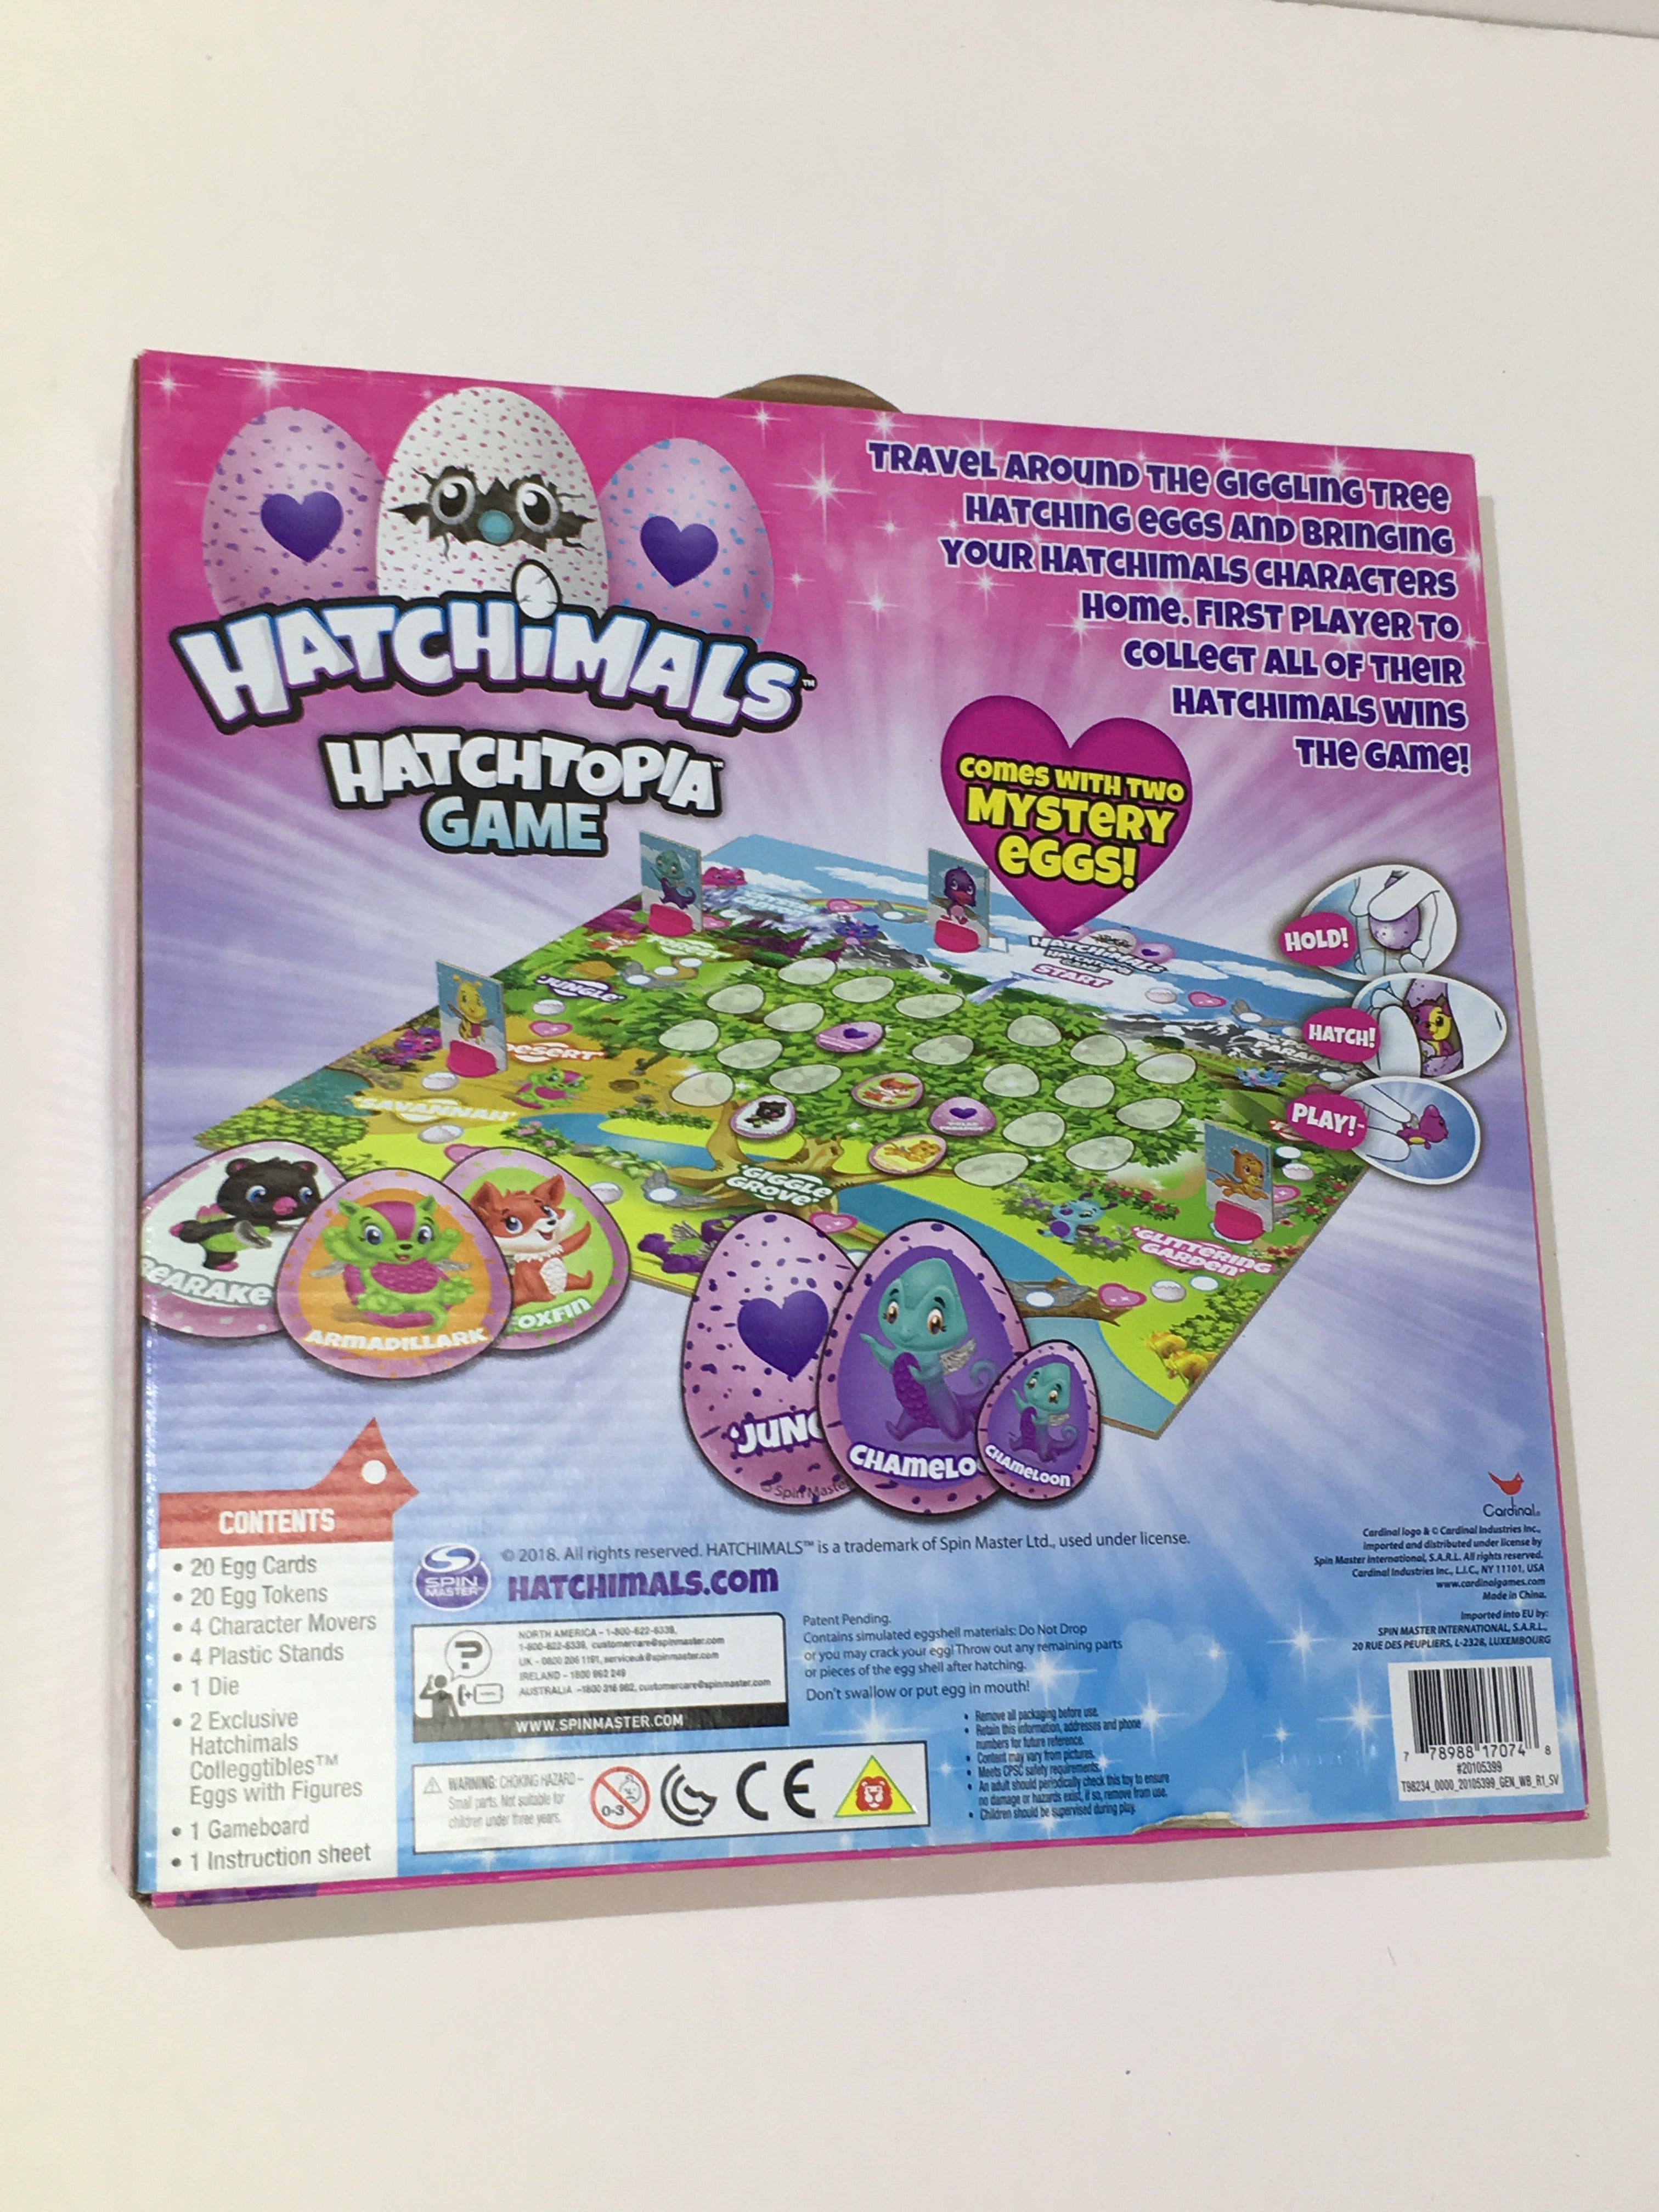 Hatchimals??Hatchtopia Game 2 Exclusive Mystery Colleggtibles Eggs Figures